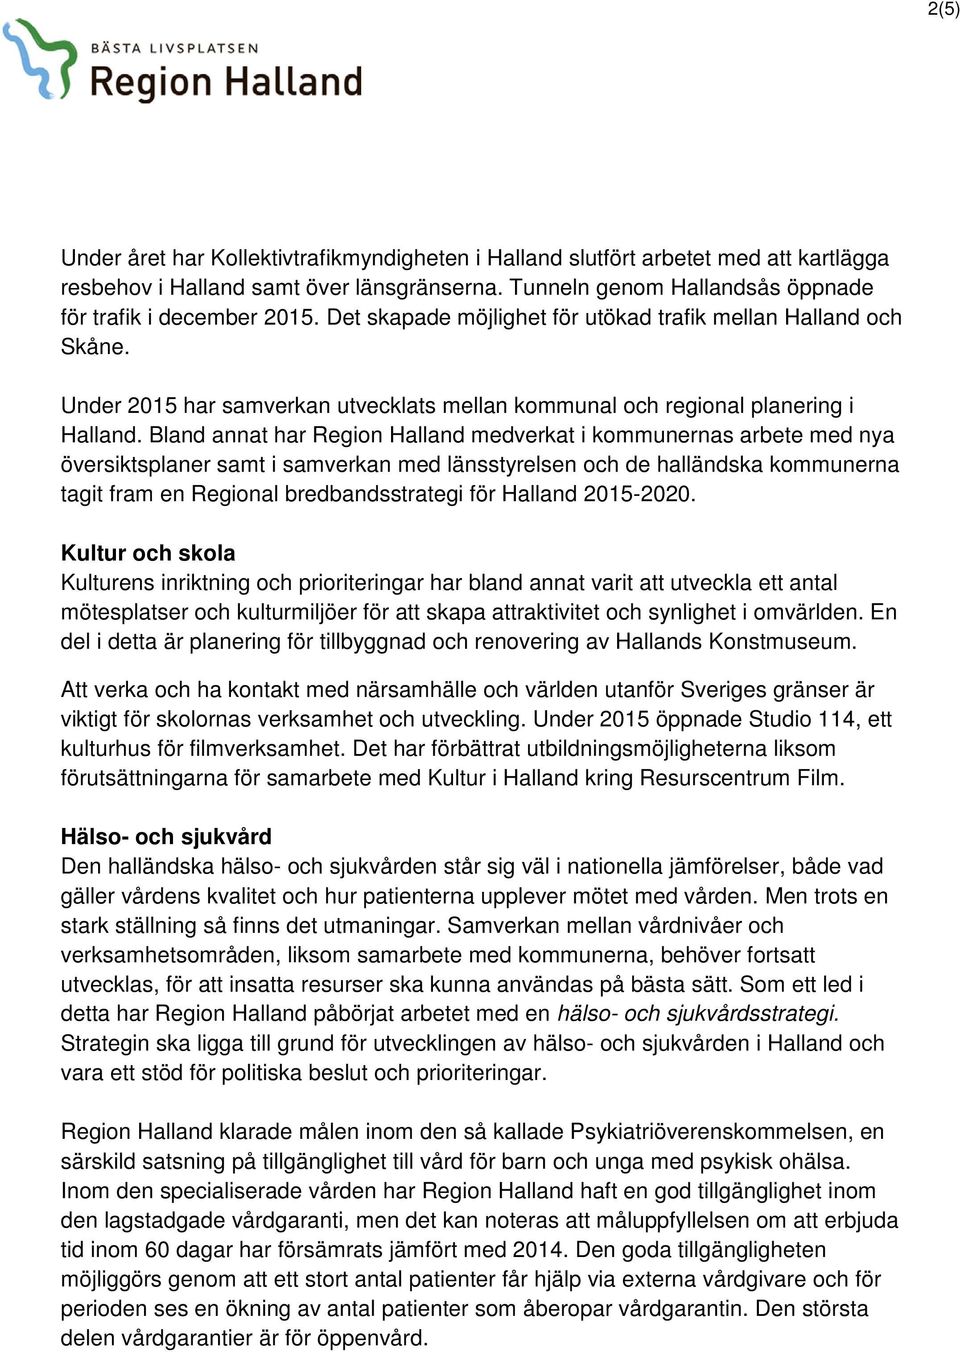 Bland annat har Region Halland medverkat i kommunernas arbete med nya översiktsplaner samt i samverkan med länsstyrelsen och de halländska kommunerna tagit fram en Regional bredbandsstrategi för